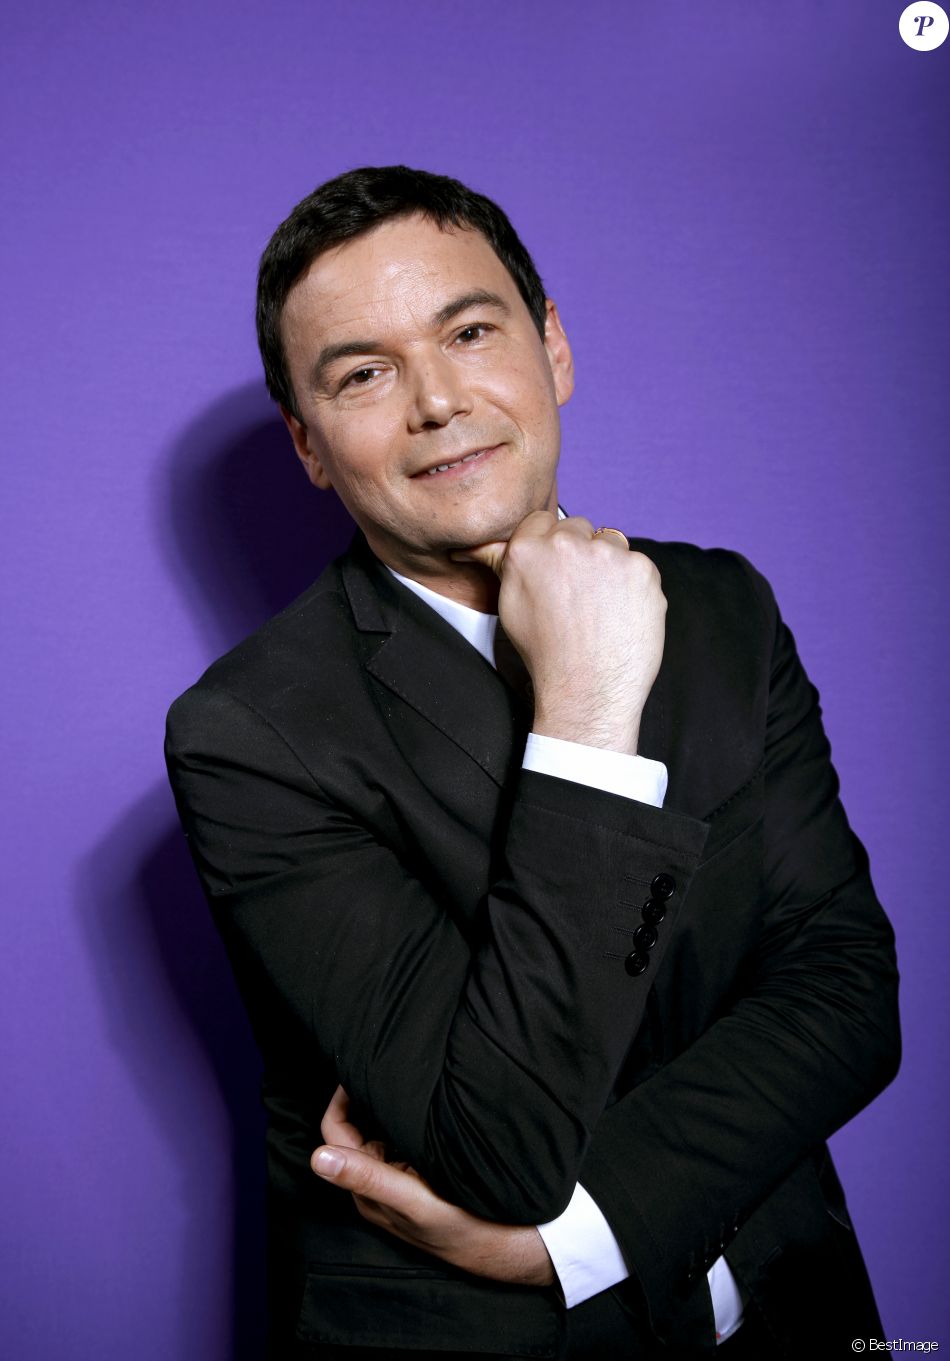  Portrait de Thomas Piketty, le 14 mai 2015 à Paris.  